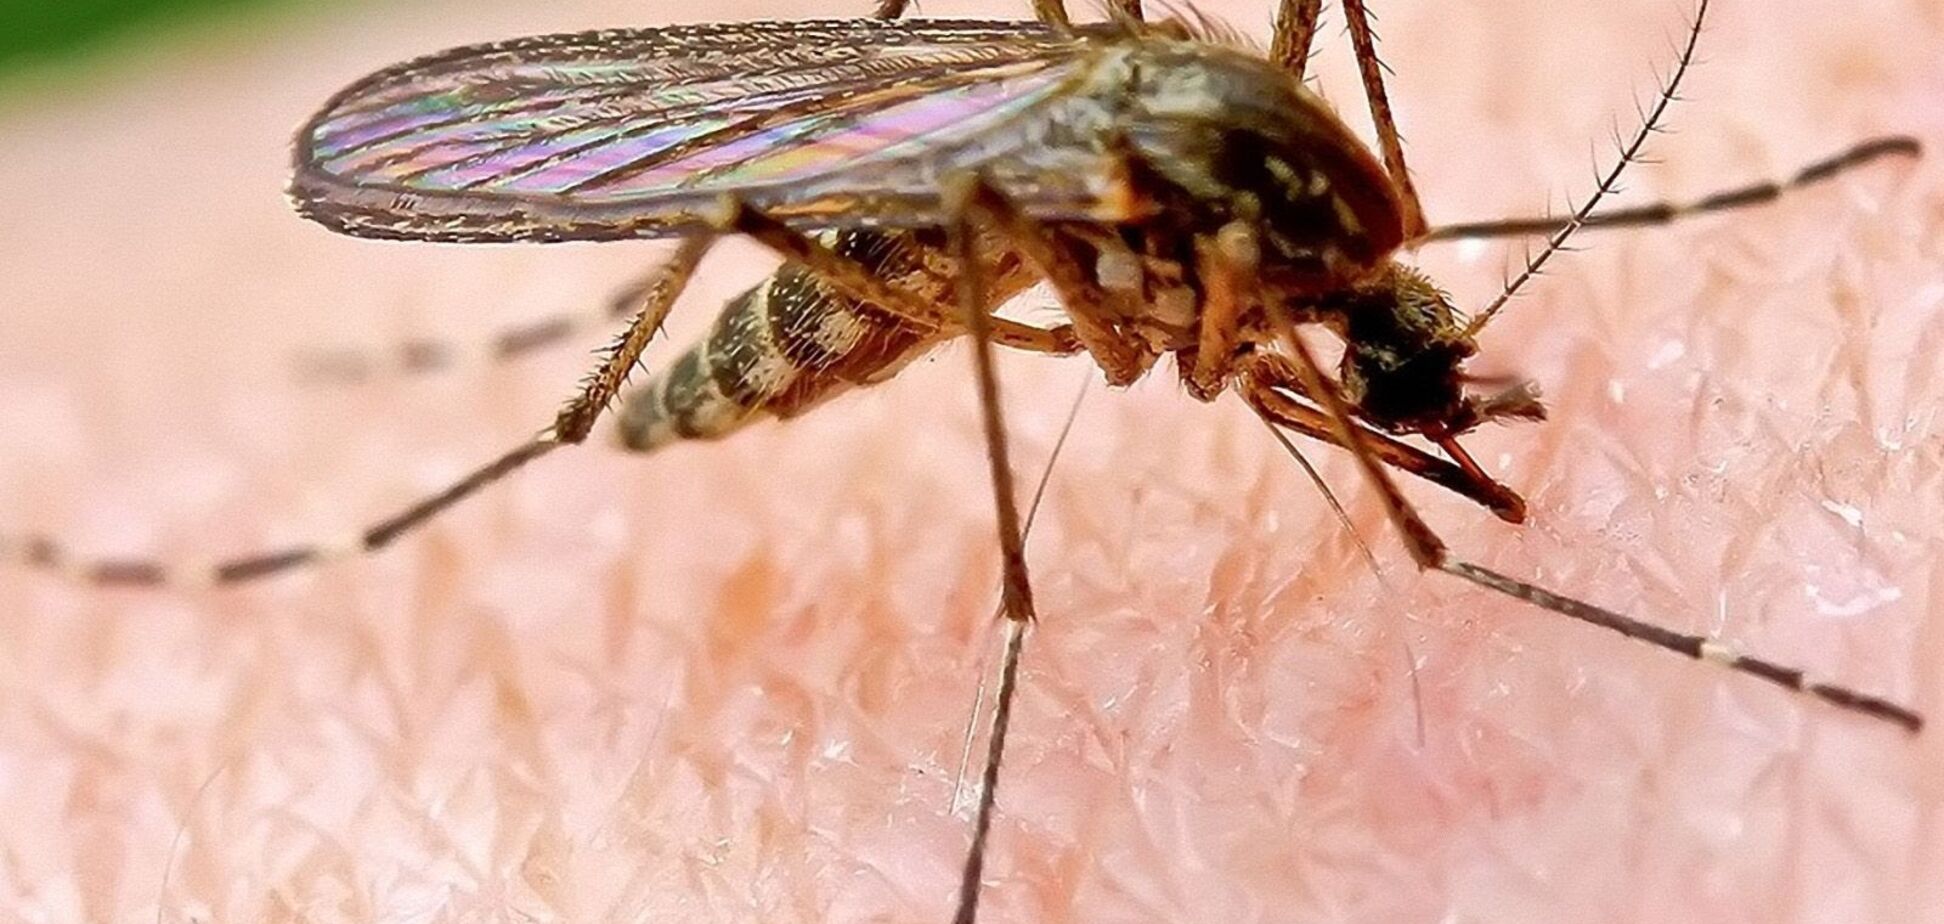  Чем опасен безобидный укус комара